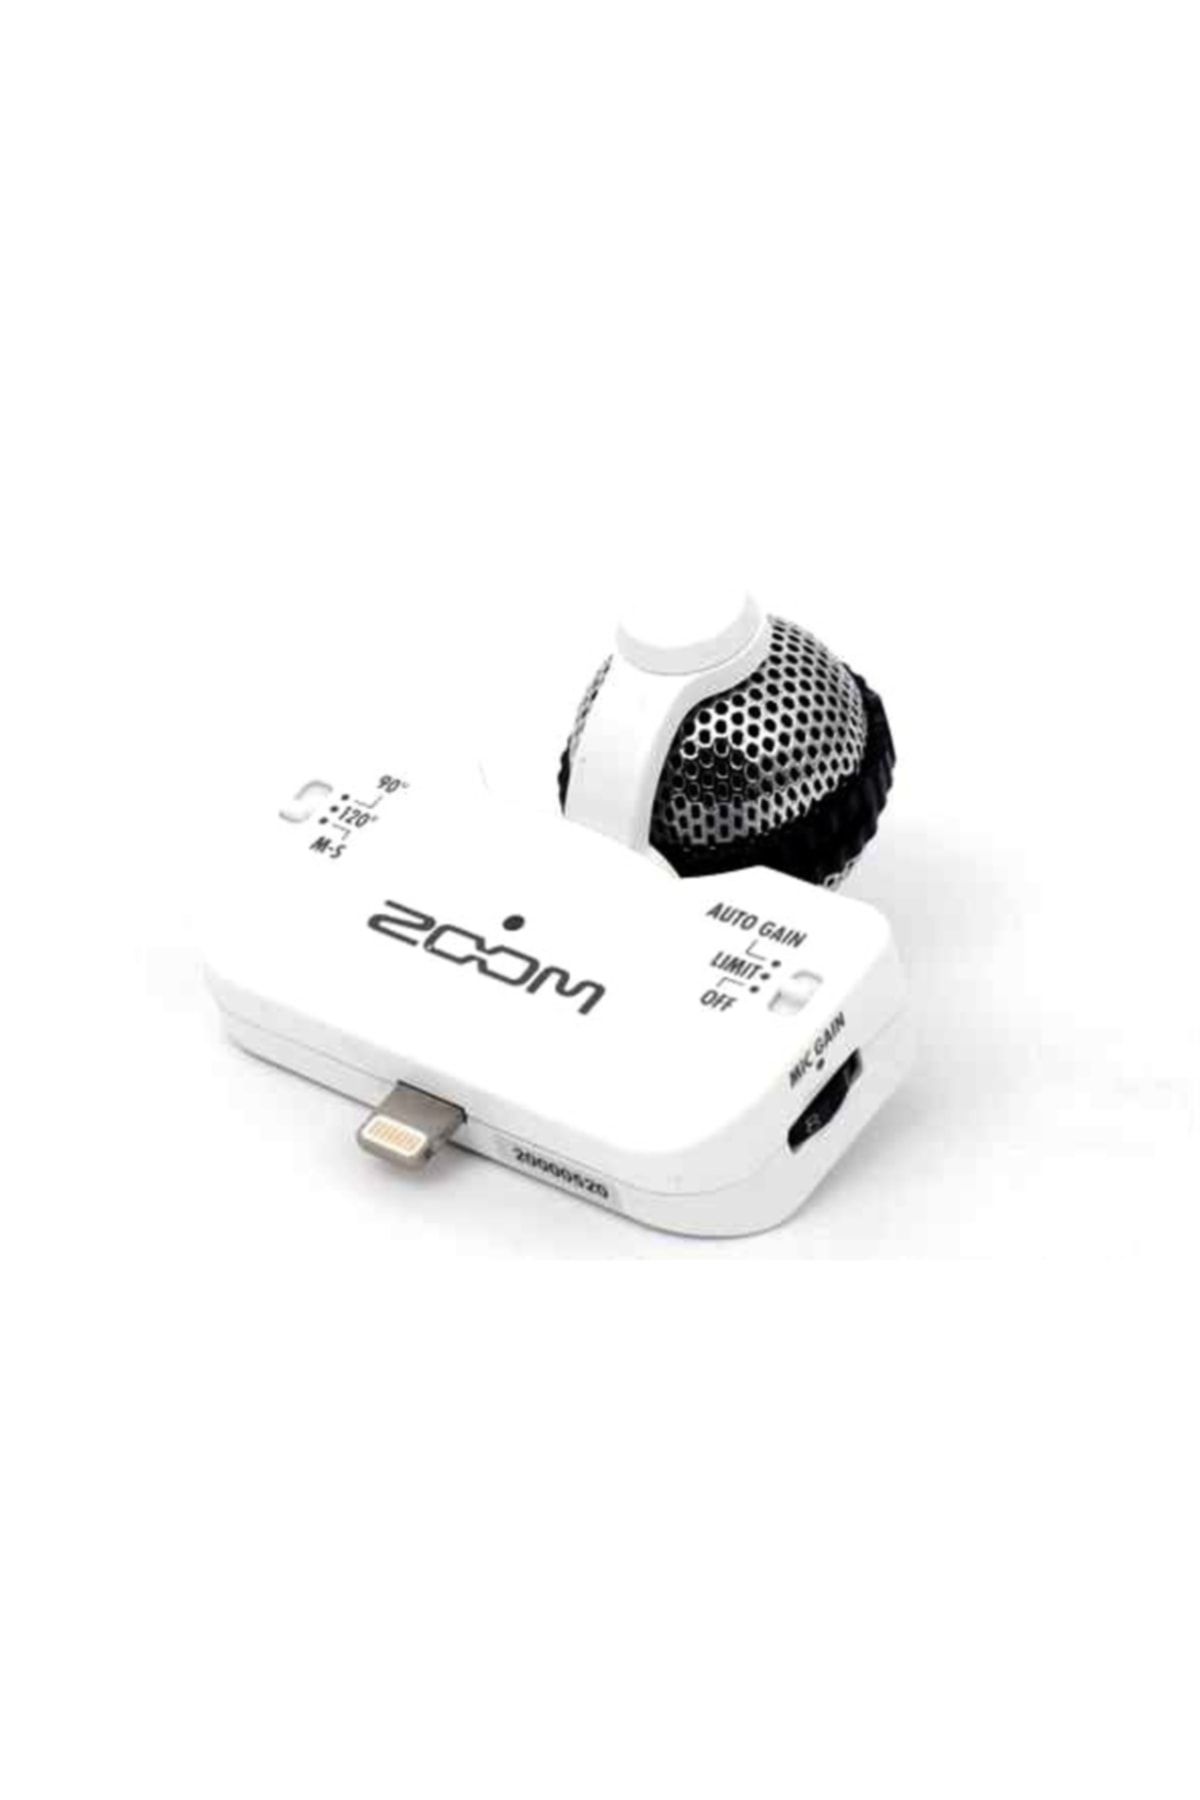 Zoom Iq5/w H4n,h6 Ve Iphone Için Uyarlanmış Stereo Mikrofon Beyaz